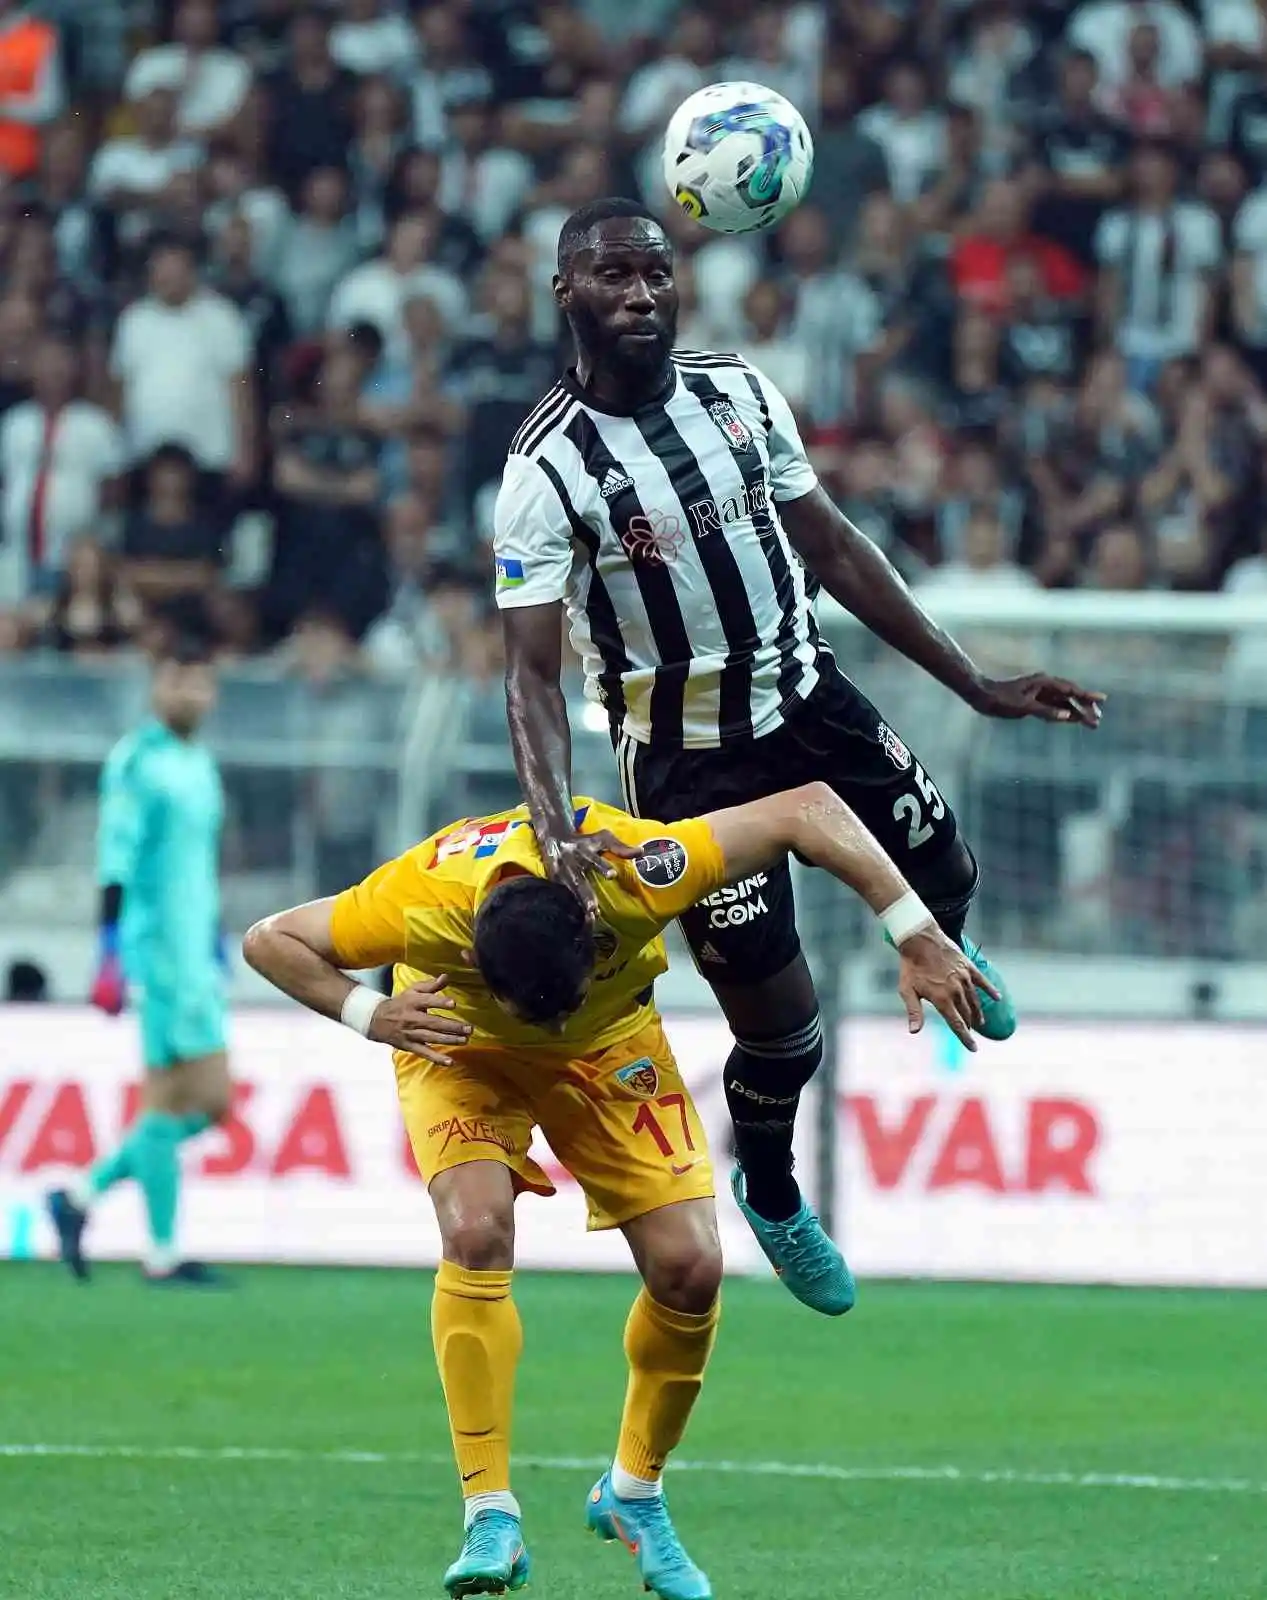 Spor Toto Süper Lig: Beşiktaş: 1 - Kayserispor: 0 (Maç sonucu)
